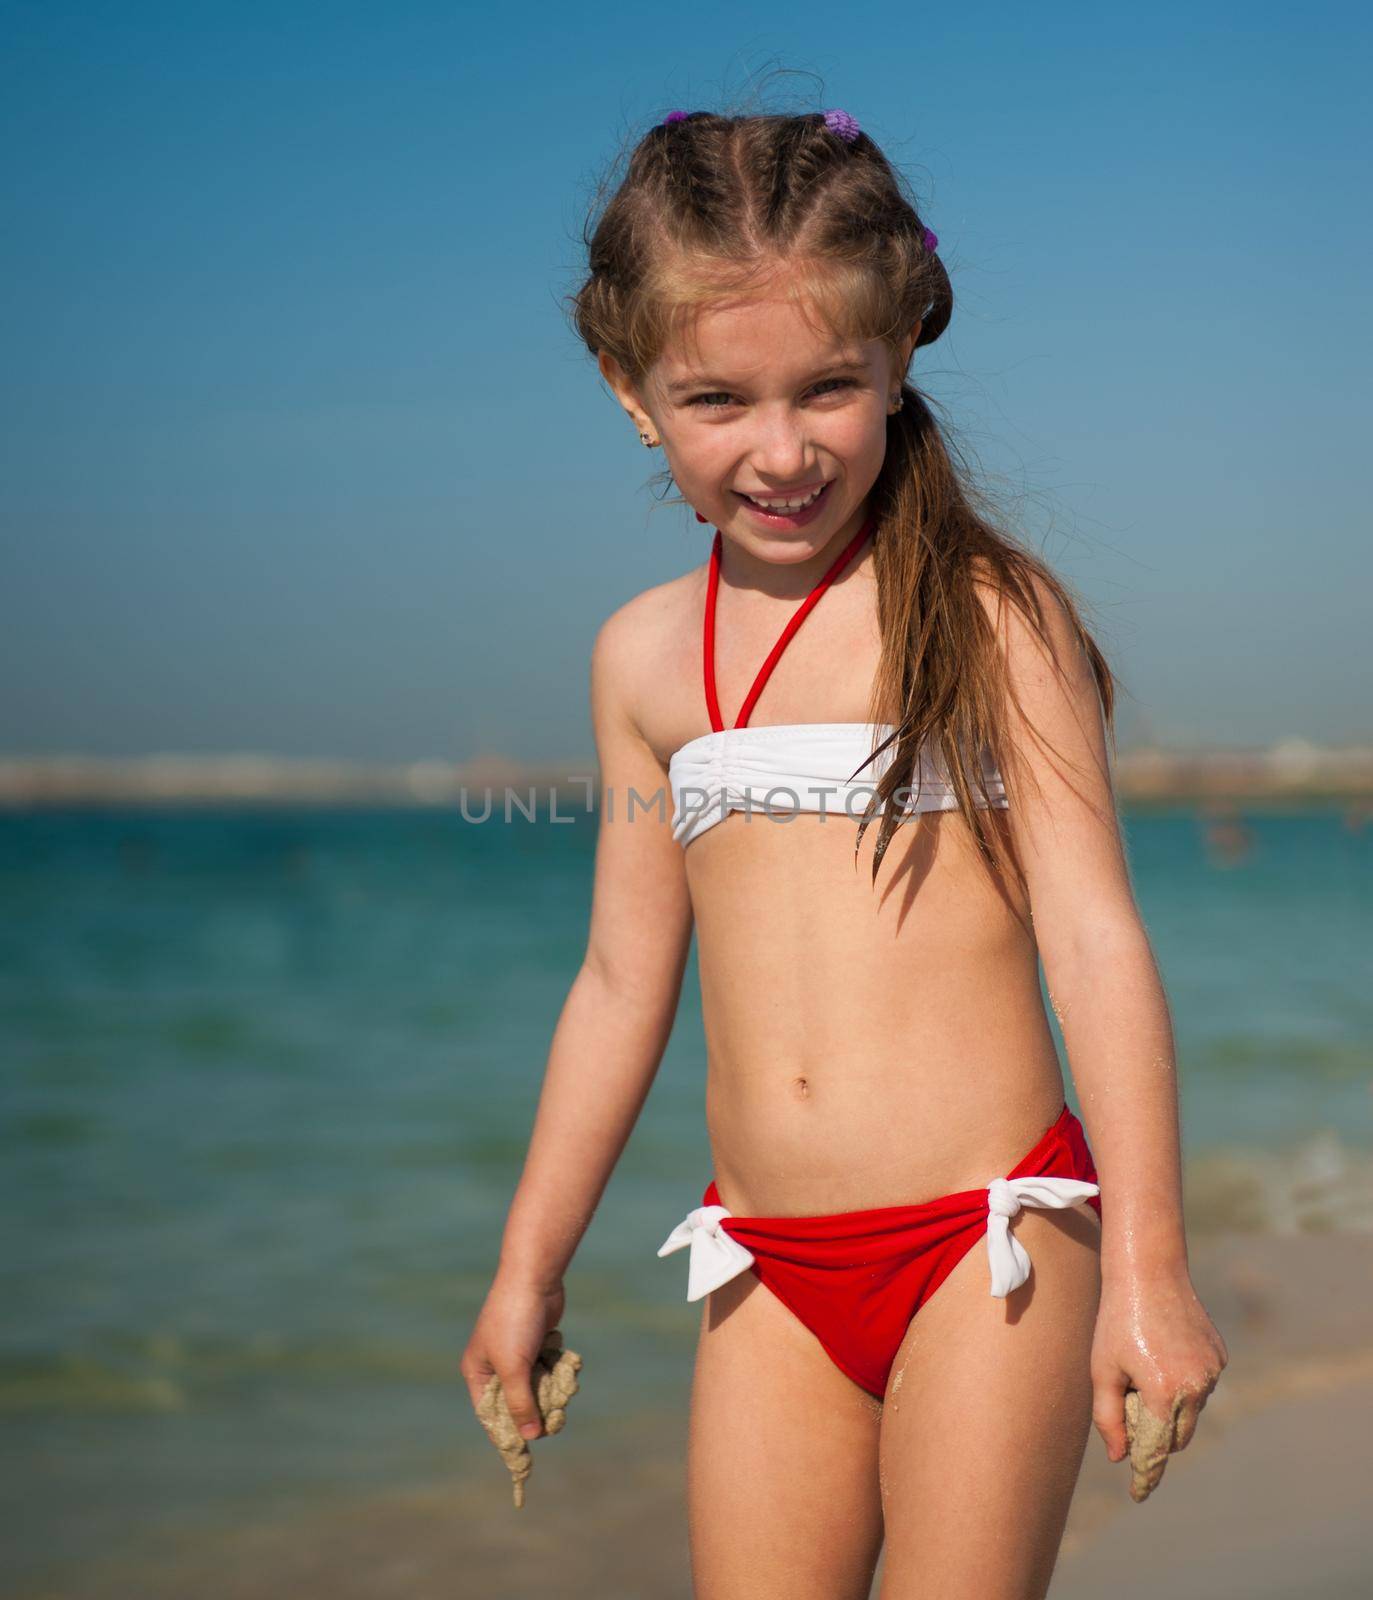 happy little girl on the beach by tan4ikk1